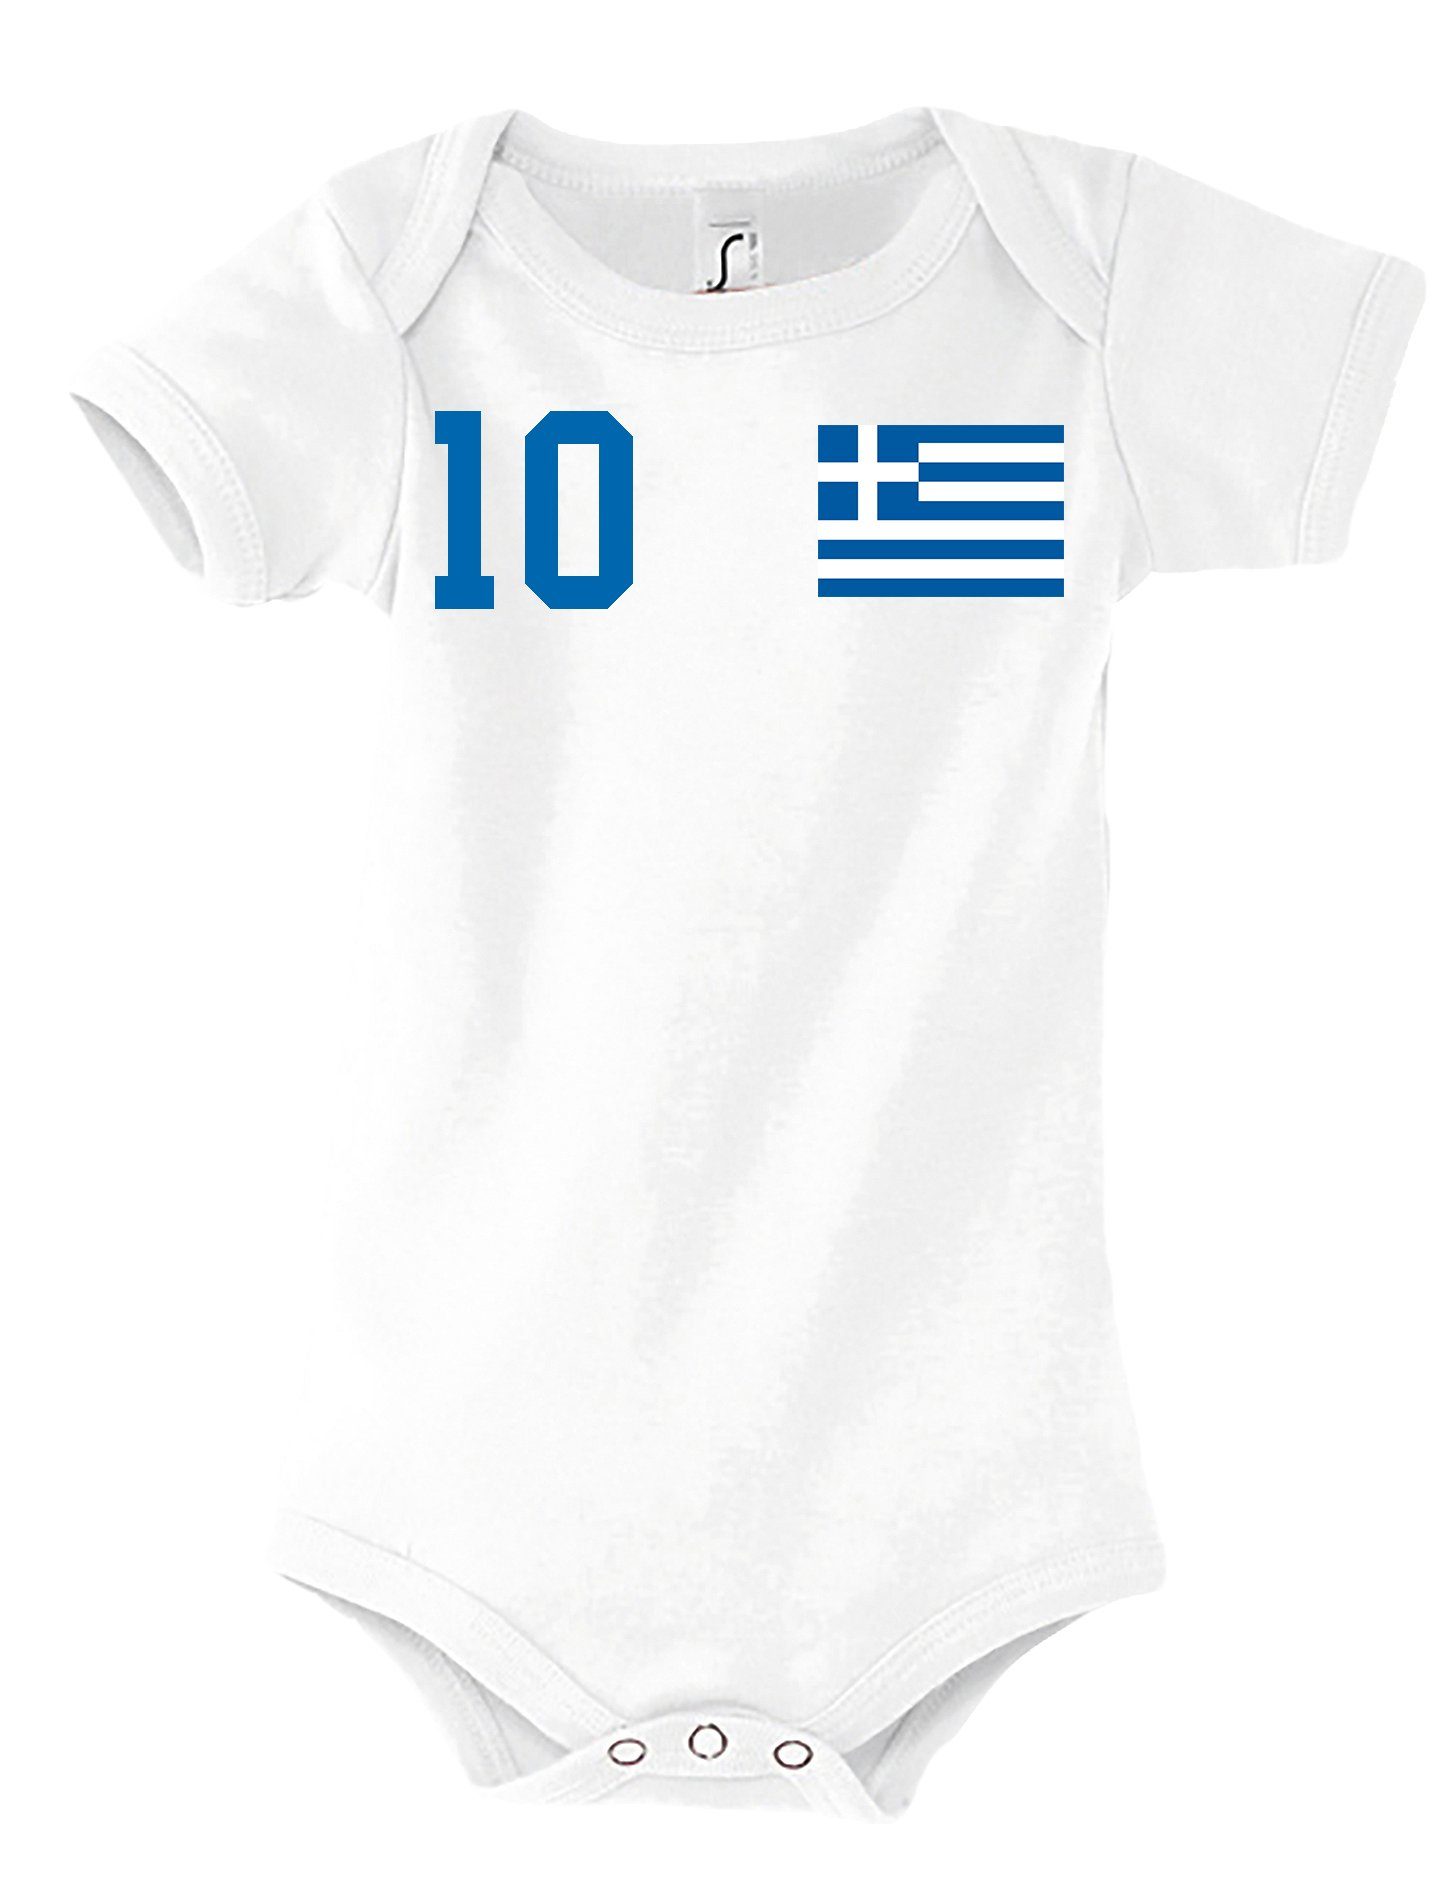 Youth Motiv Designz Kinder Weiß Griechenland Strampler Baby mit Body trendigem Kurzarmbody